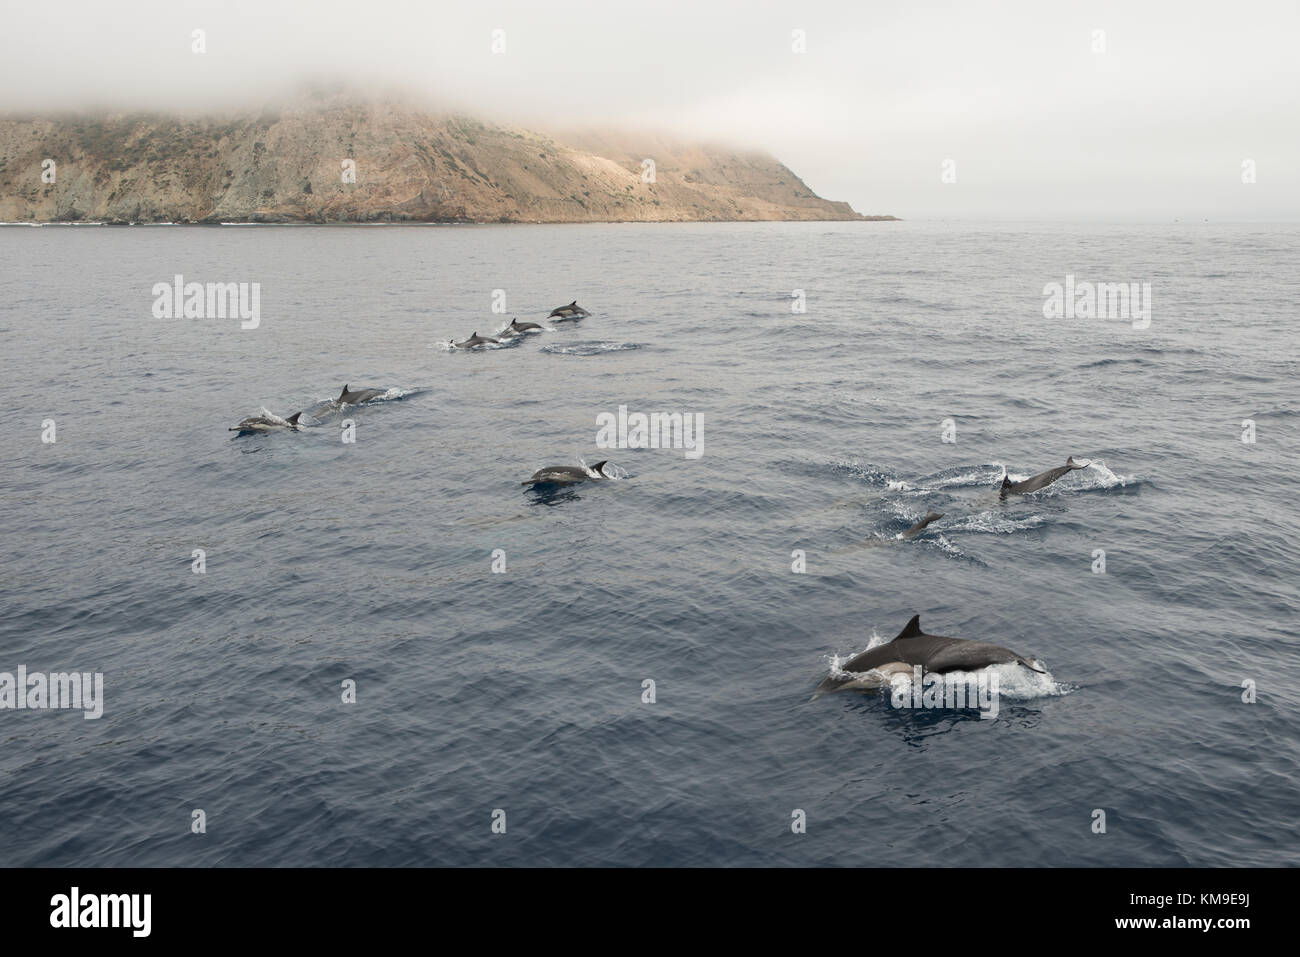 Podómetro de delfín nadando en el océano, California, Estados Unidos Foto de stock